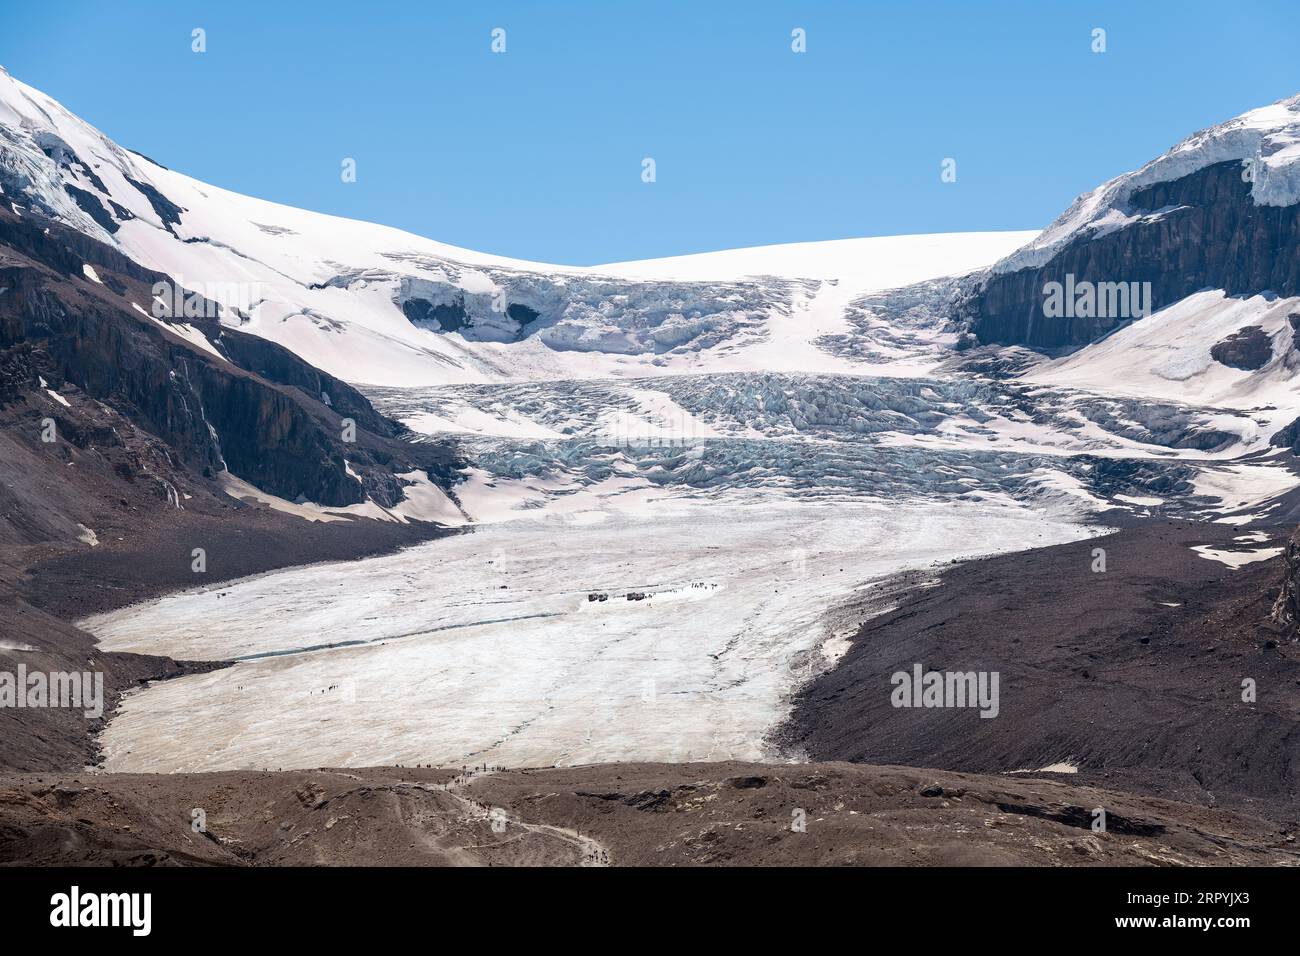 Glacier Athabasca en gros plan de la promenade Icefields, Banff et parc national Jasper, Canada. Banque D'Images